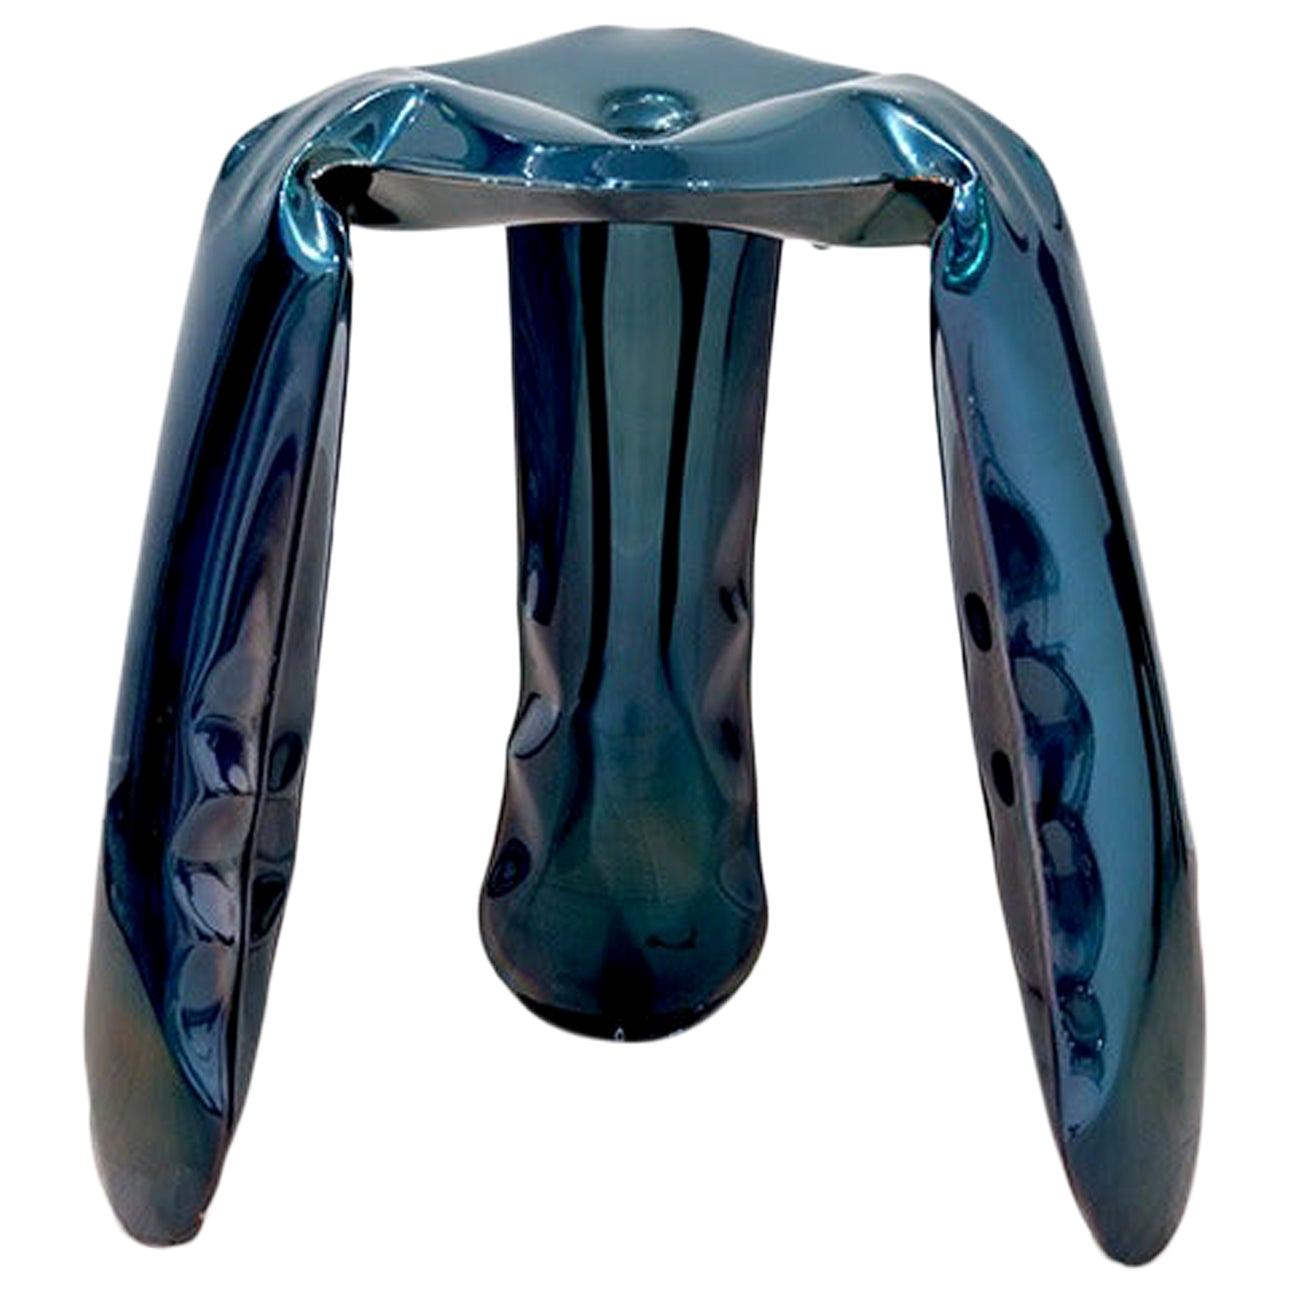 Plopp Stool by Zieta, Standard Size, Cosmic Blue Finish For Sale